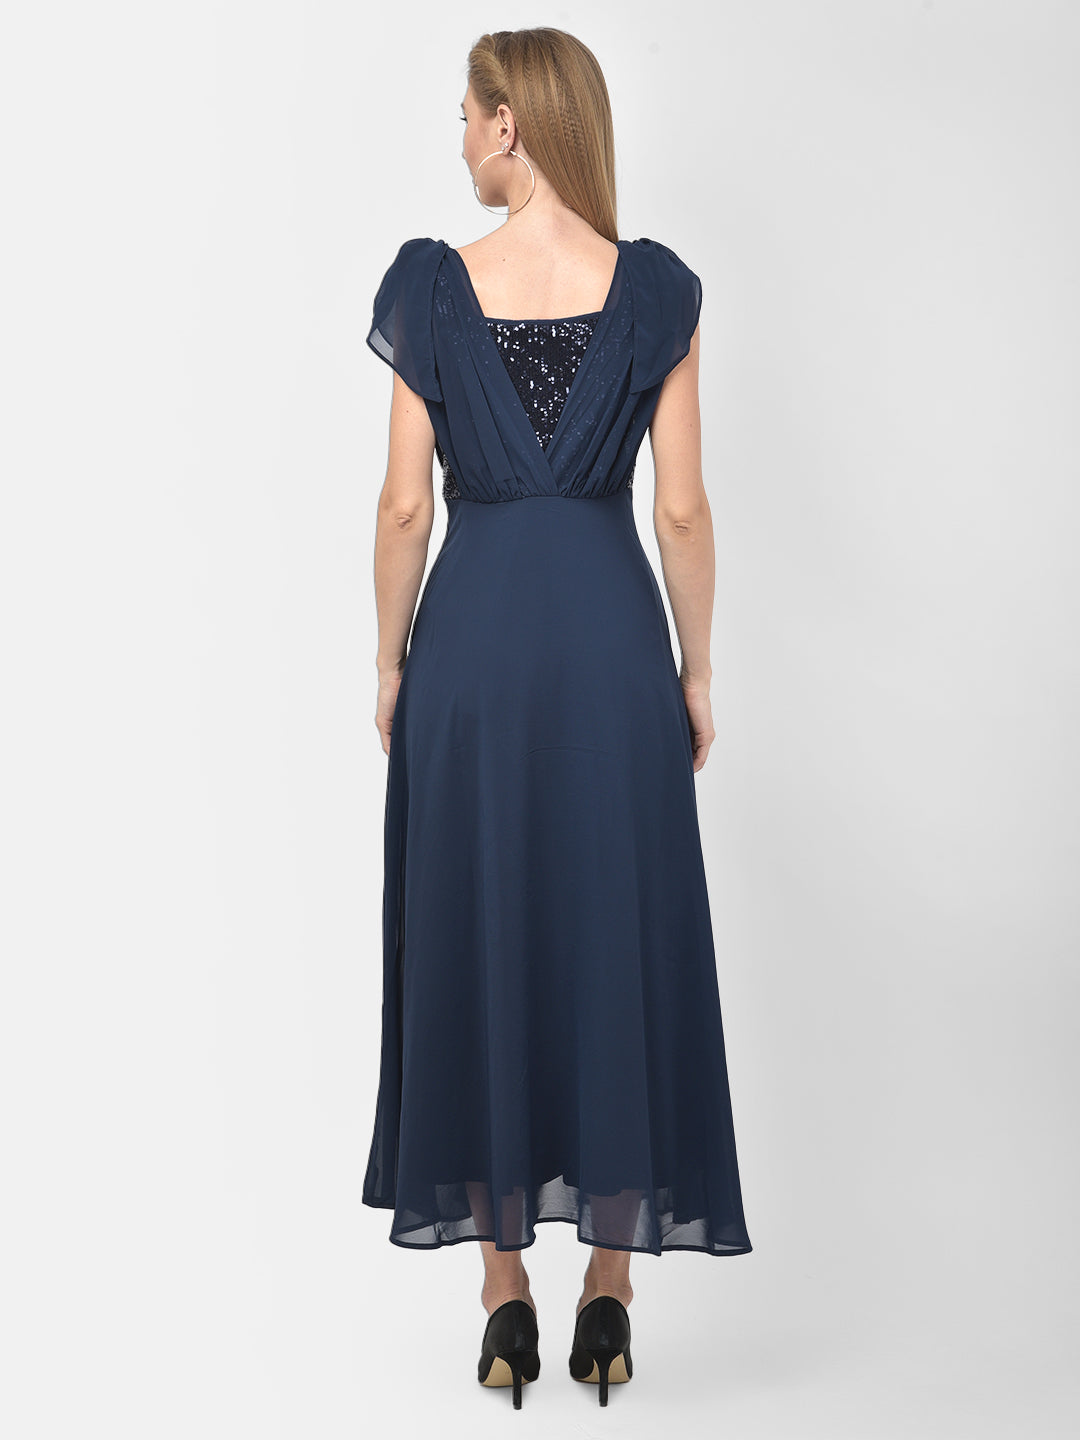 Blue Cap Sleeve Maxi Solid Dress